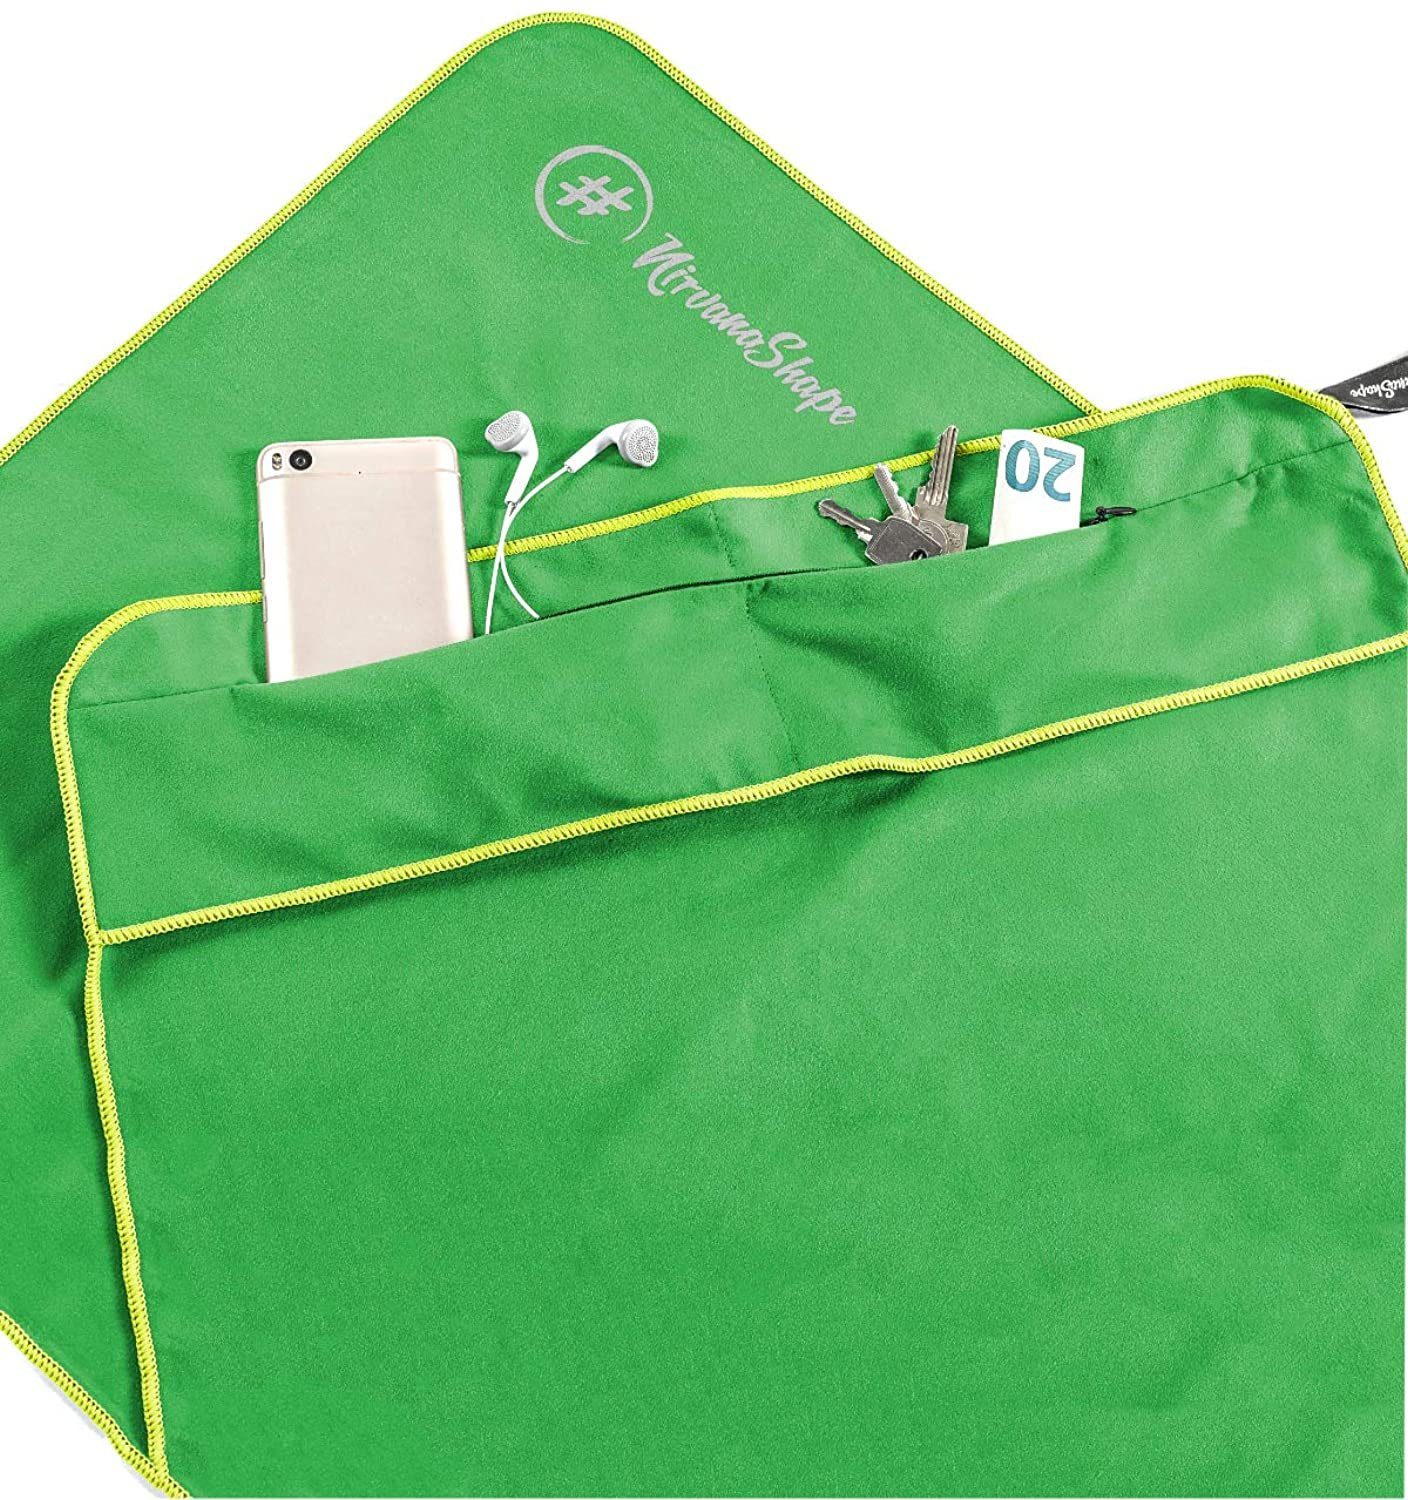 NirvanaShape Sporthandtuch Fitness-Handtuch mit Magnet-Clip, Mikrofaser Sporthandtuch, Microfaser, 2x Reißverschlusstaschen & Funktionaler Geräteüberzug, Ultra-Saugfähig Grün / Grüner Rand